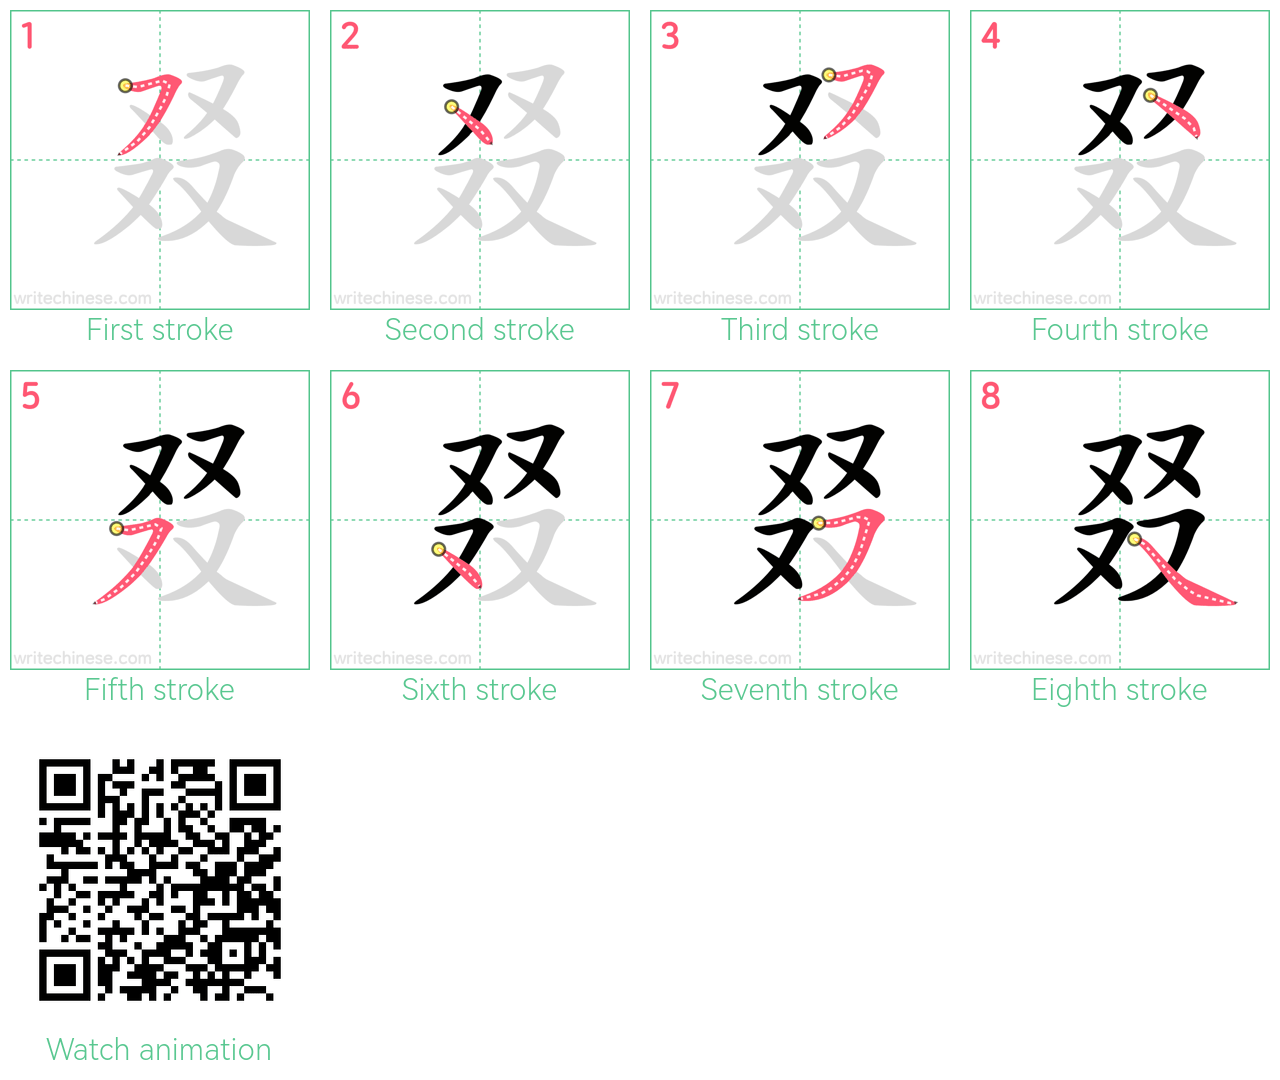 叕 step-by-step stroke order diagrams